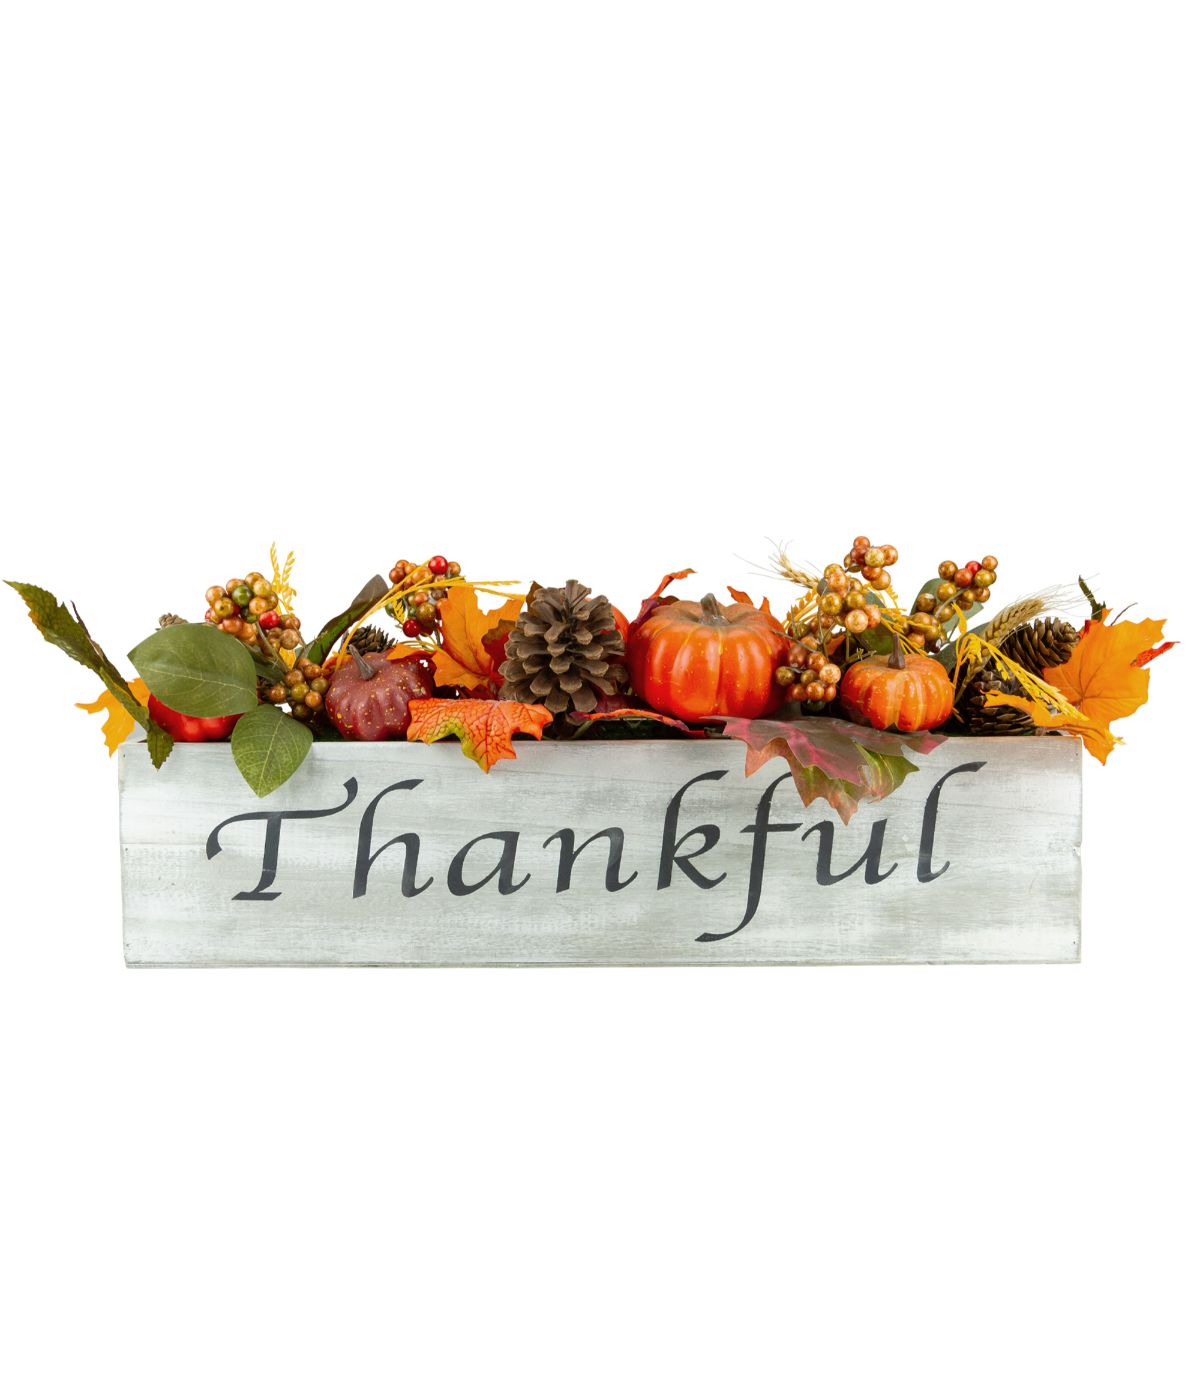 Autumn Harvest Arrangement "Thankful" Centerpiece Brown